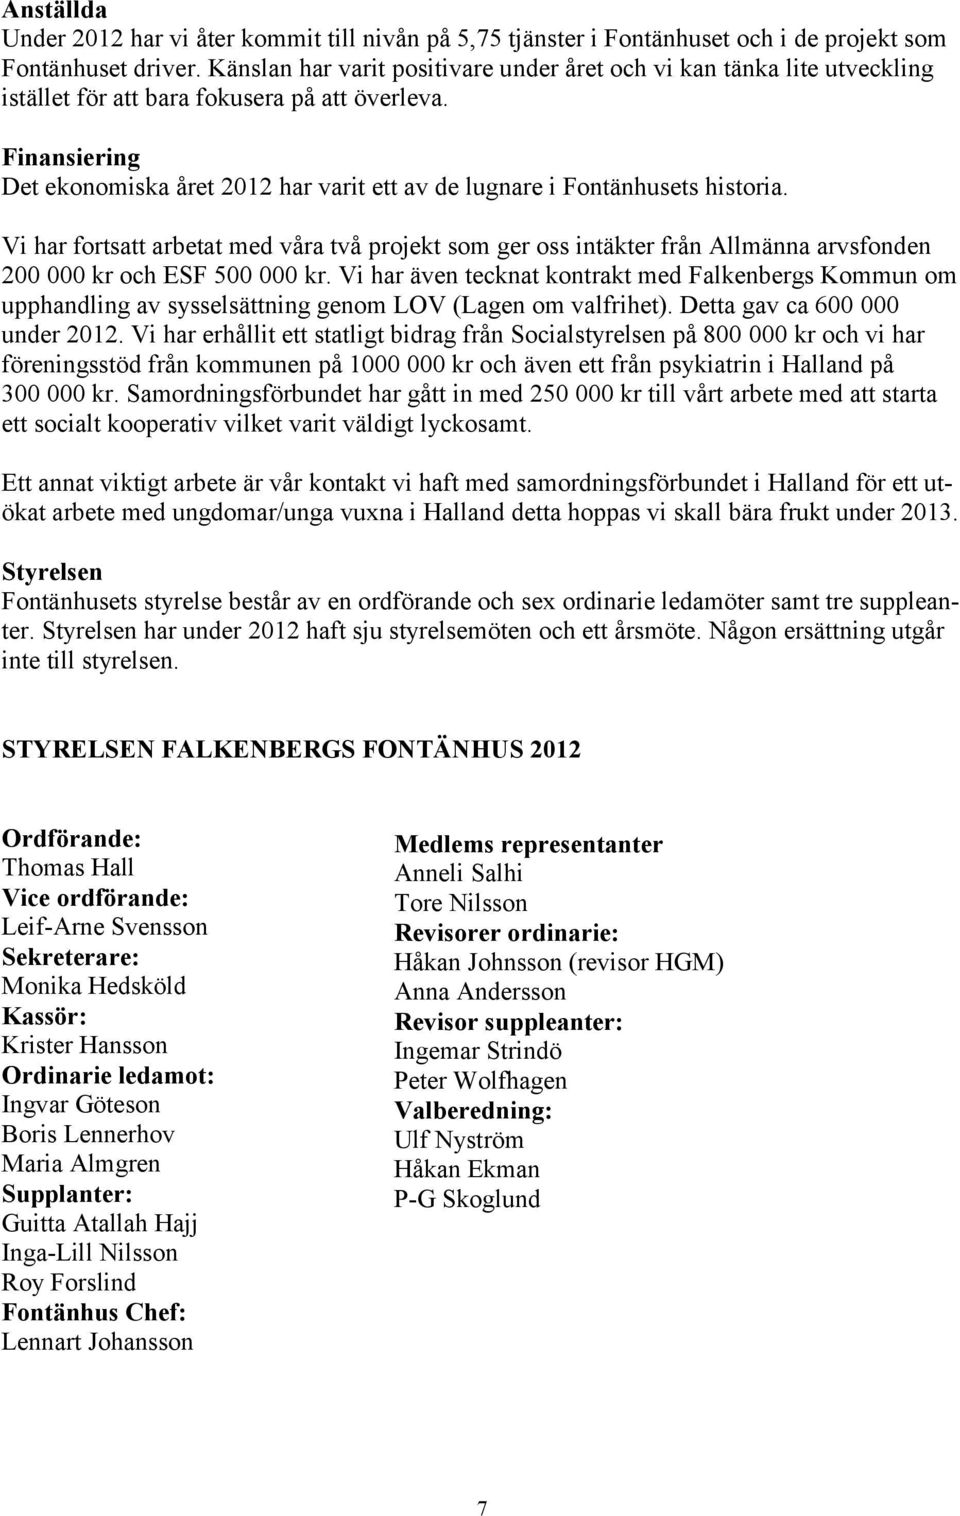 Finansiering Det ekonomiska året 2012 har varit ett av de lugnare i Fontänhusets historia.